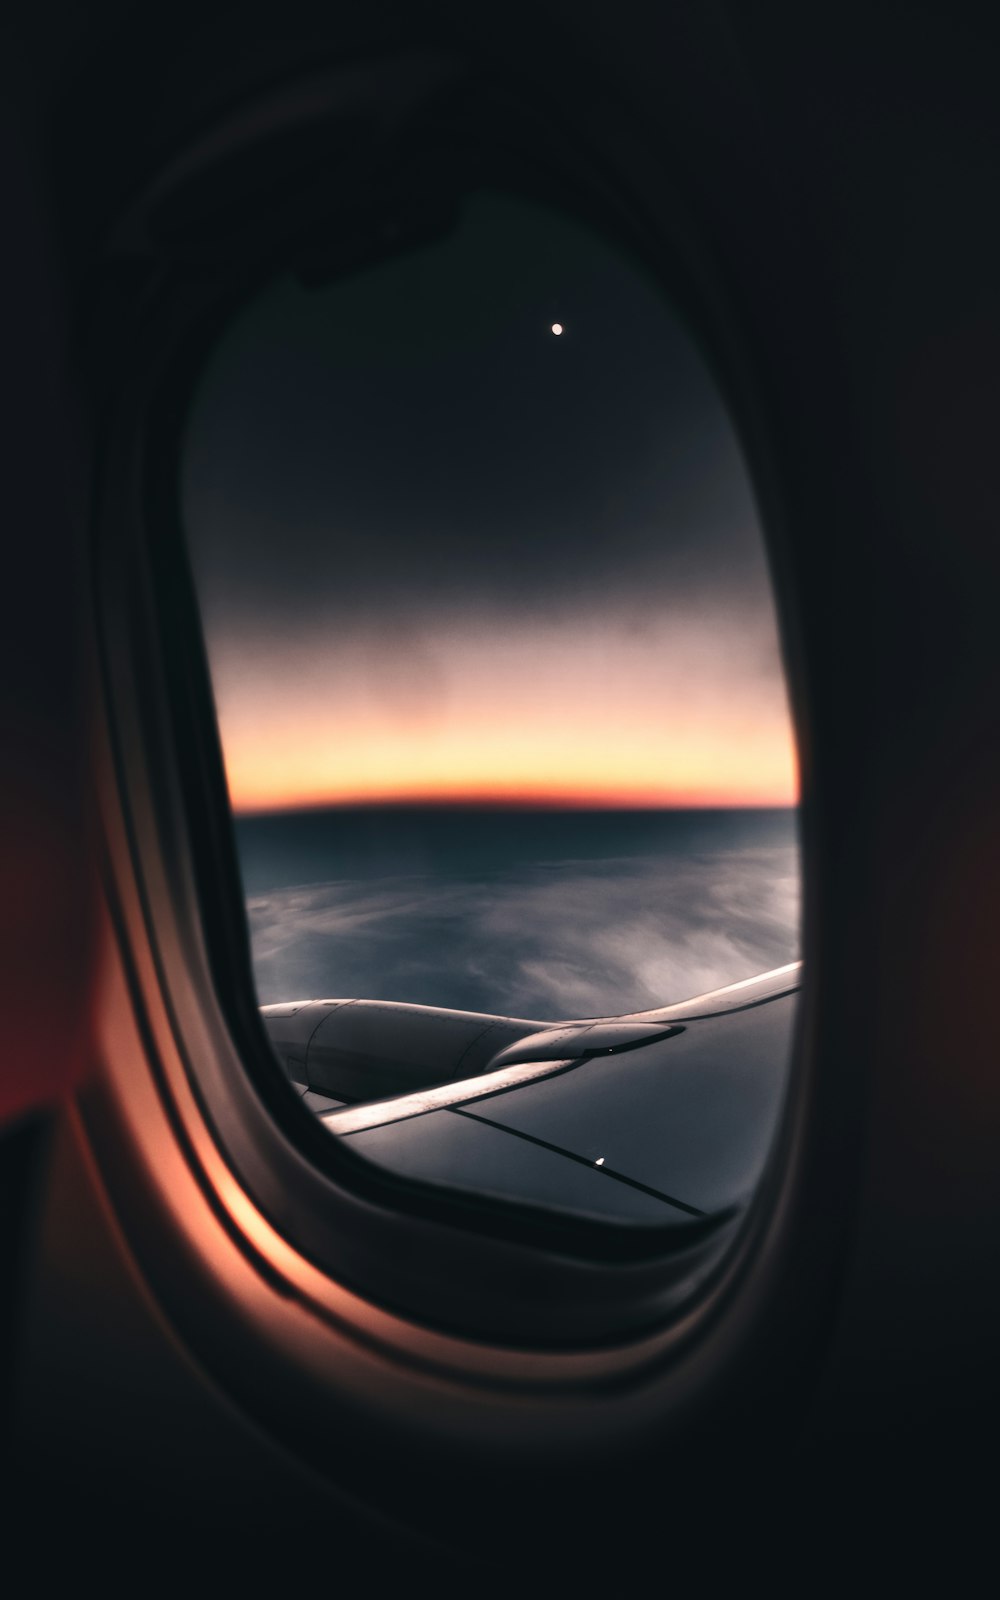 vista da janela do avião das nuvens durante o pôr do sol